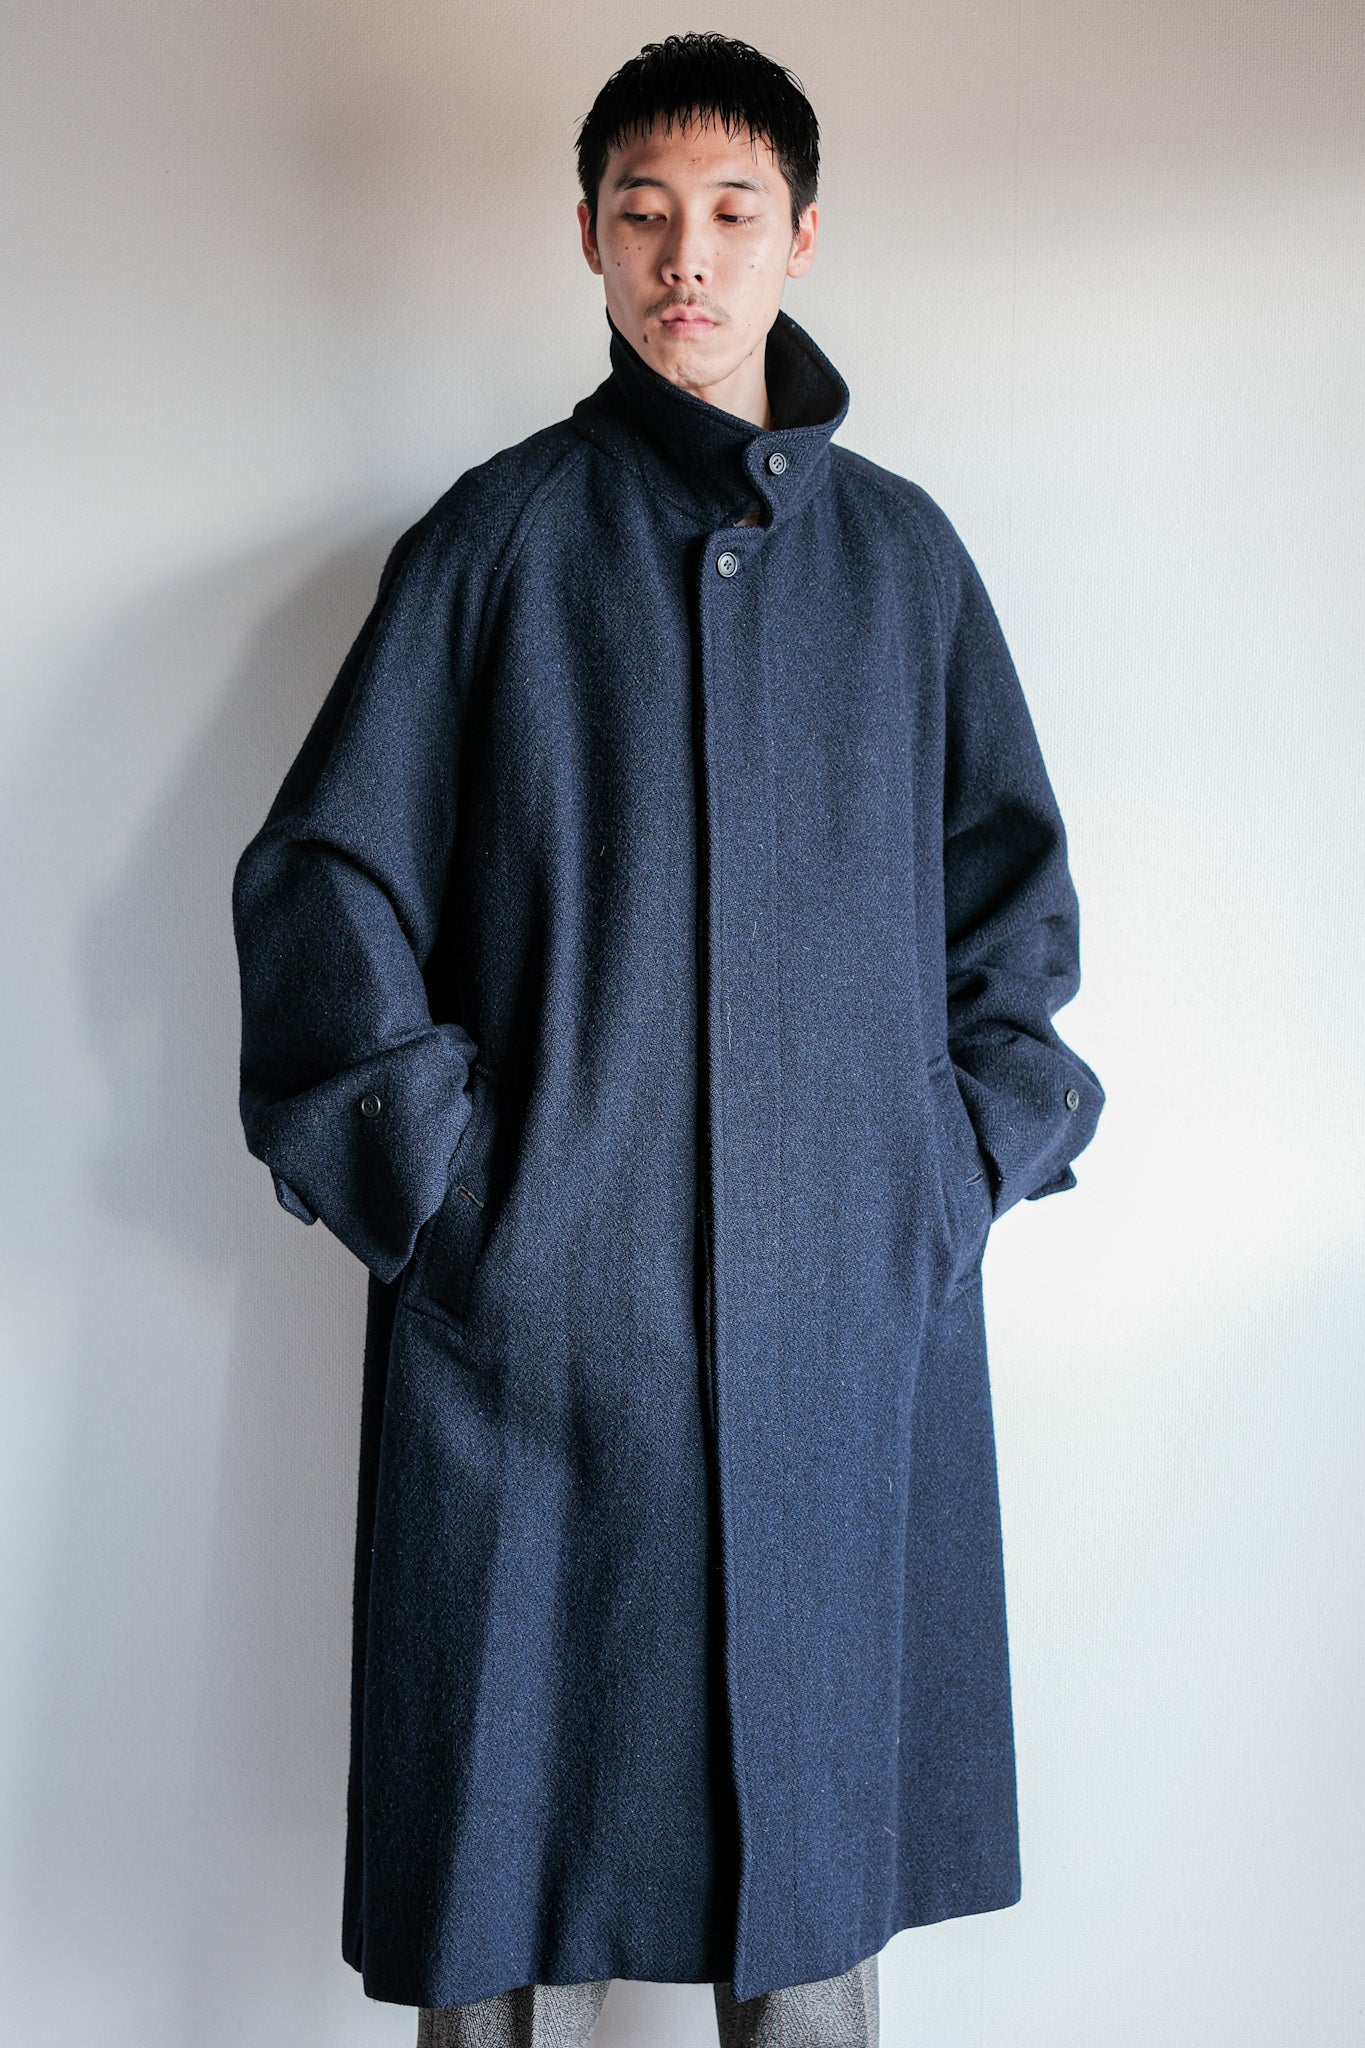 [〜80年代]復古burberrys單raglan羊毛balmacaan外套的尺寸。54rl“ harris tweed”“卡夫式定製筆記”